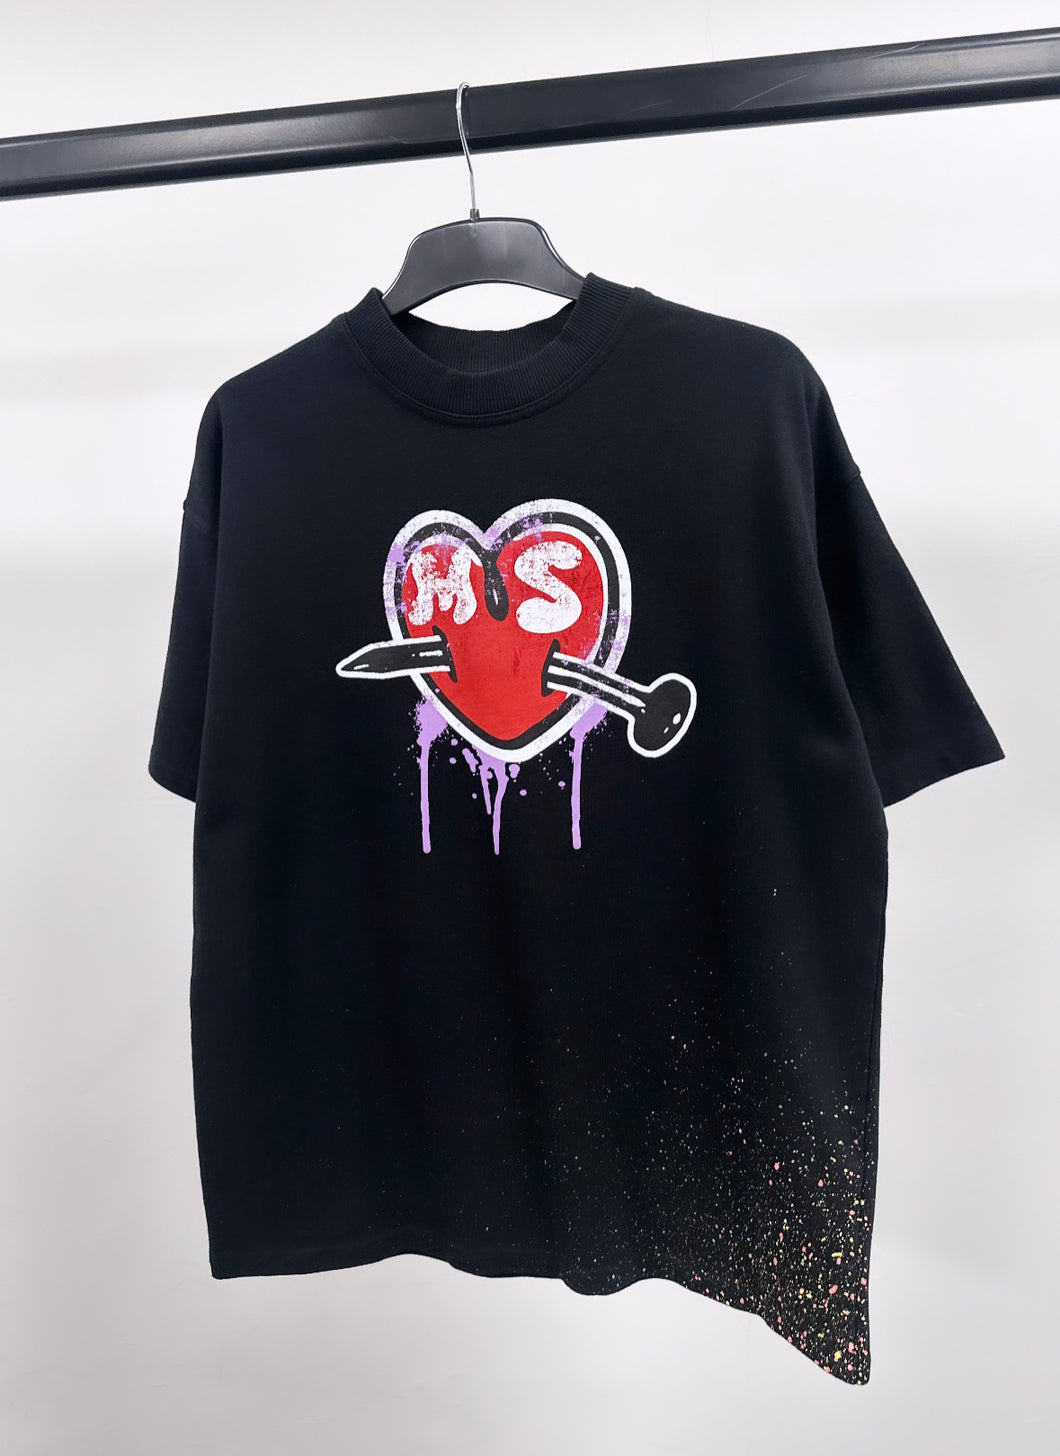 Black Heart Heavyweight Splatter T-shirt.